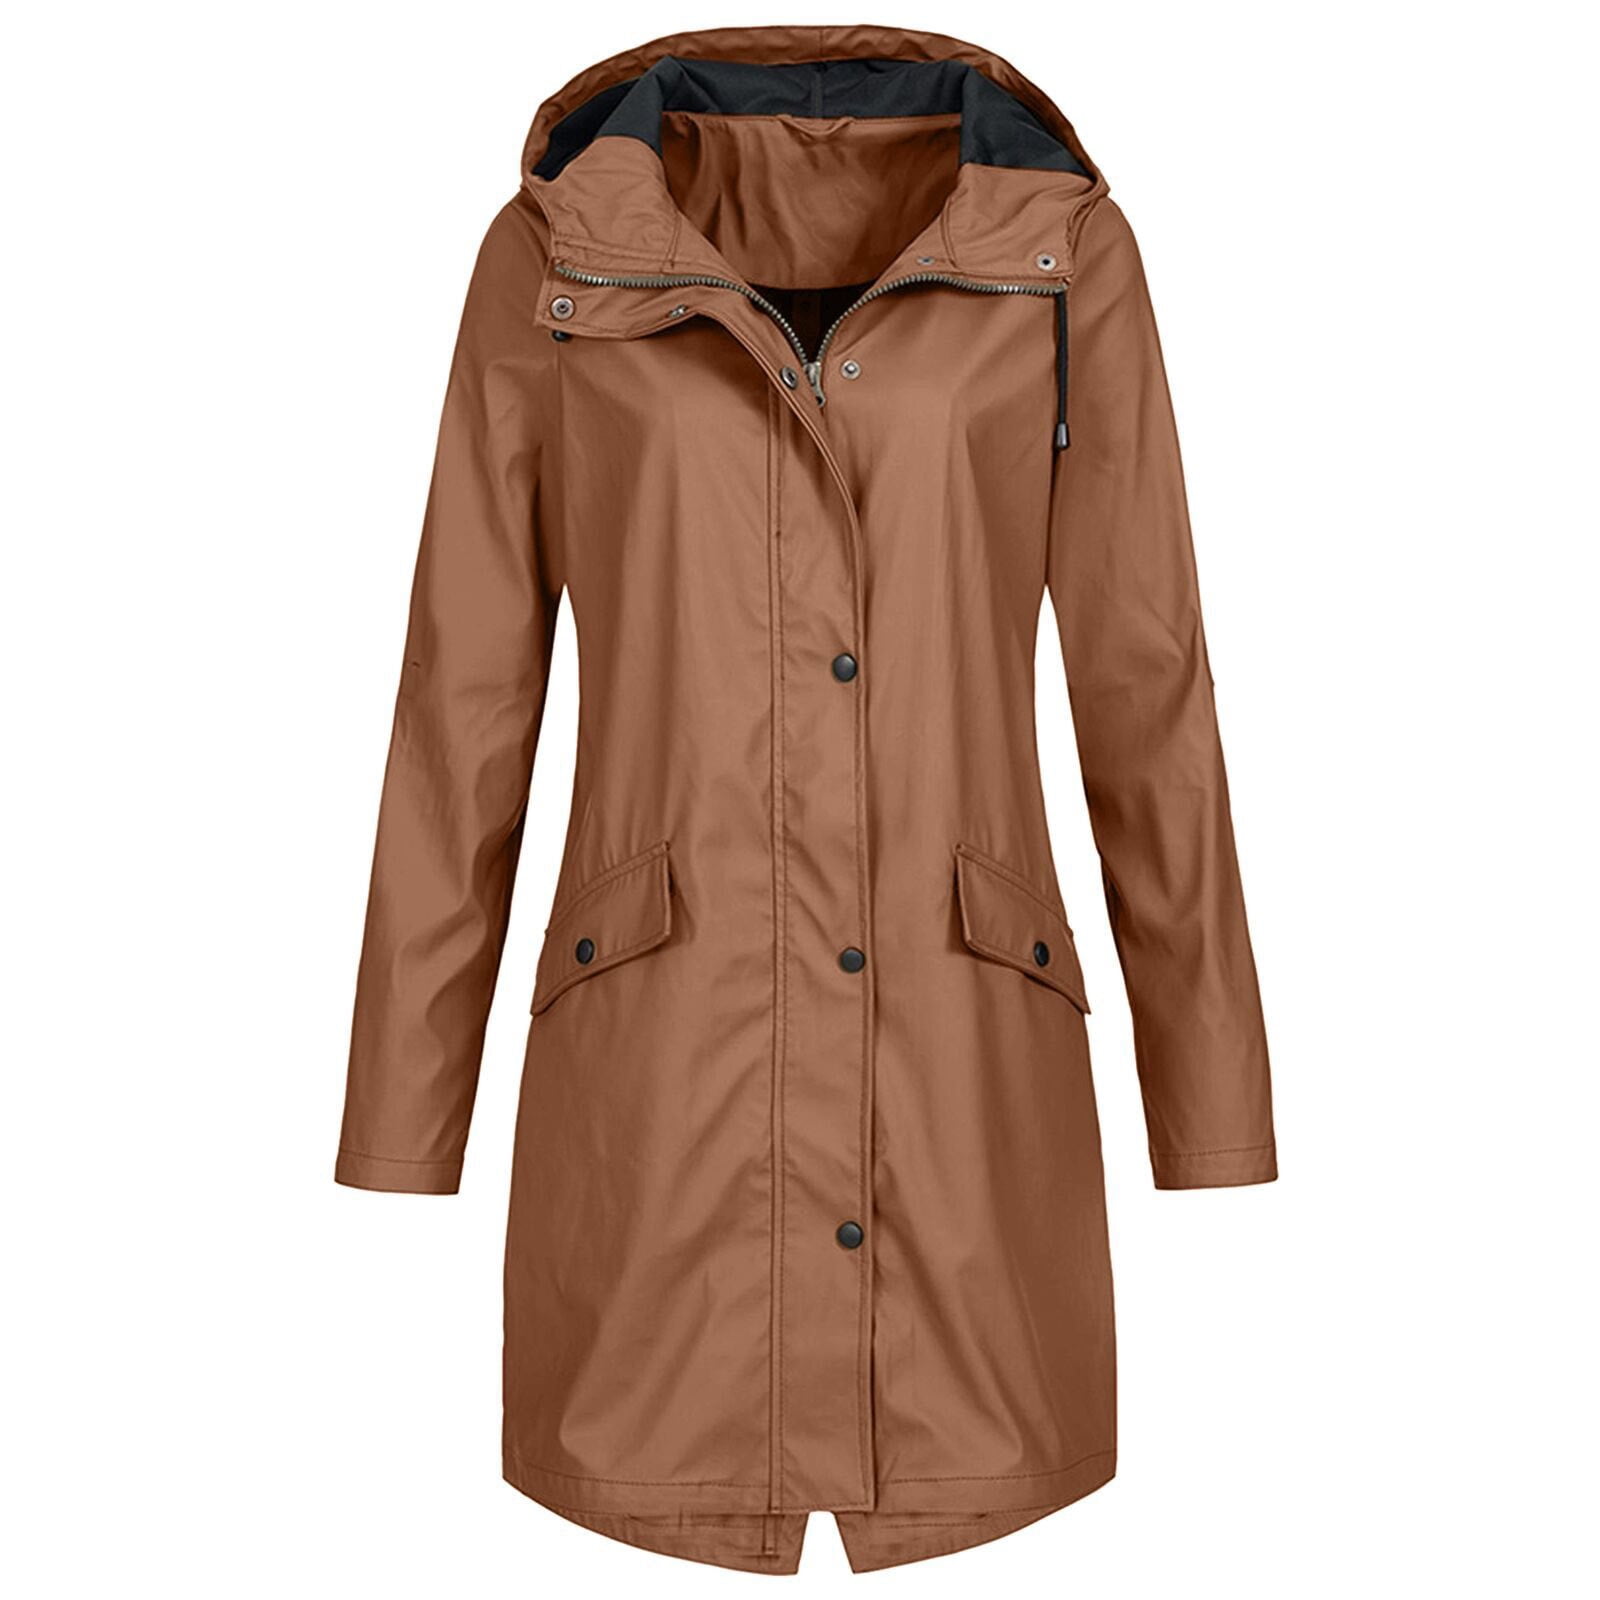 Windbreaker for Womens Plus Size Hooded Waterproof Raincoats Solid Rain Jacket Outwear Windproof Loose Trench Coat 